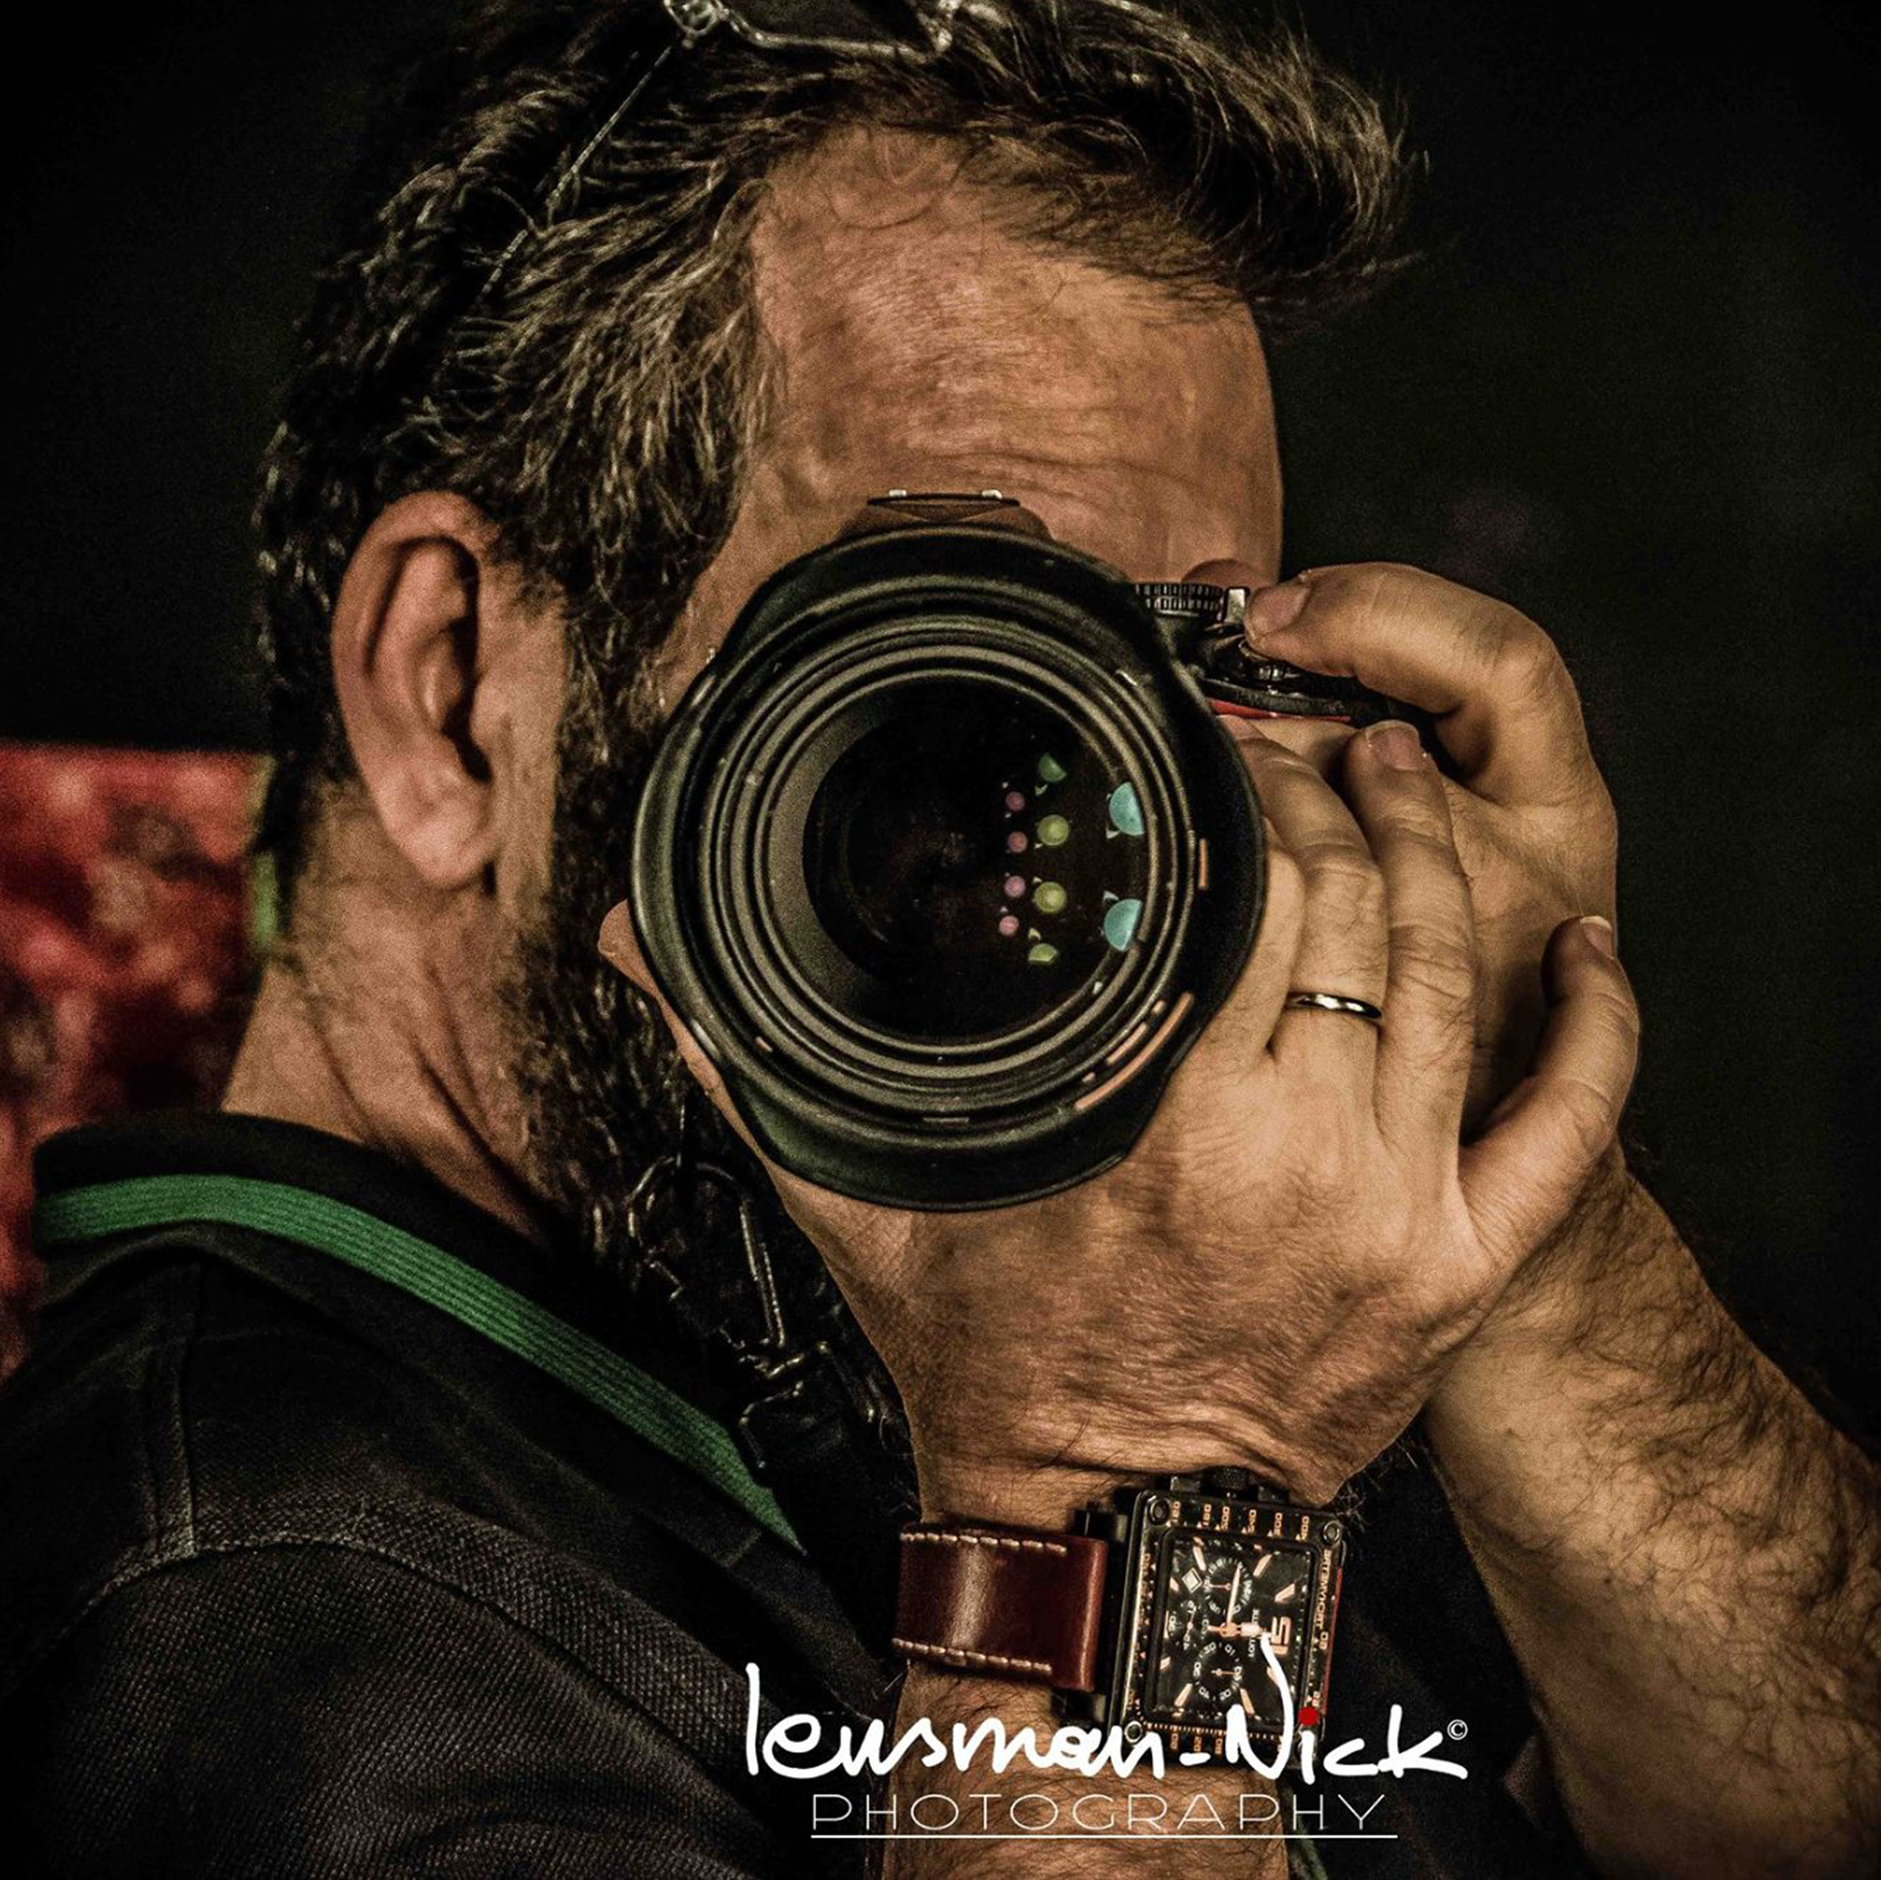 Lensman Nick Photography